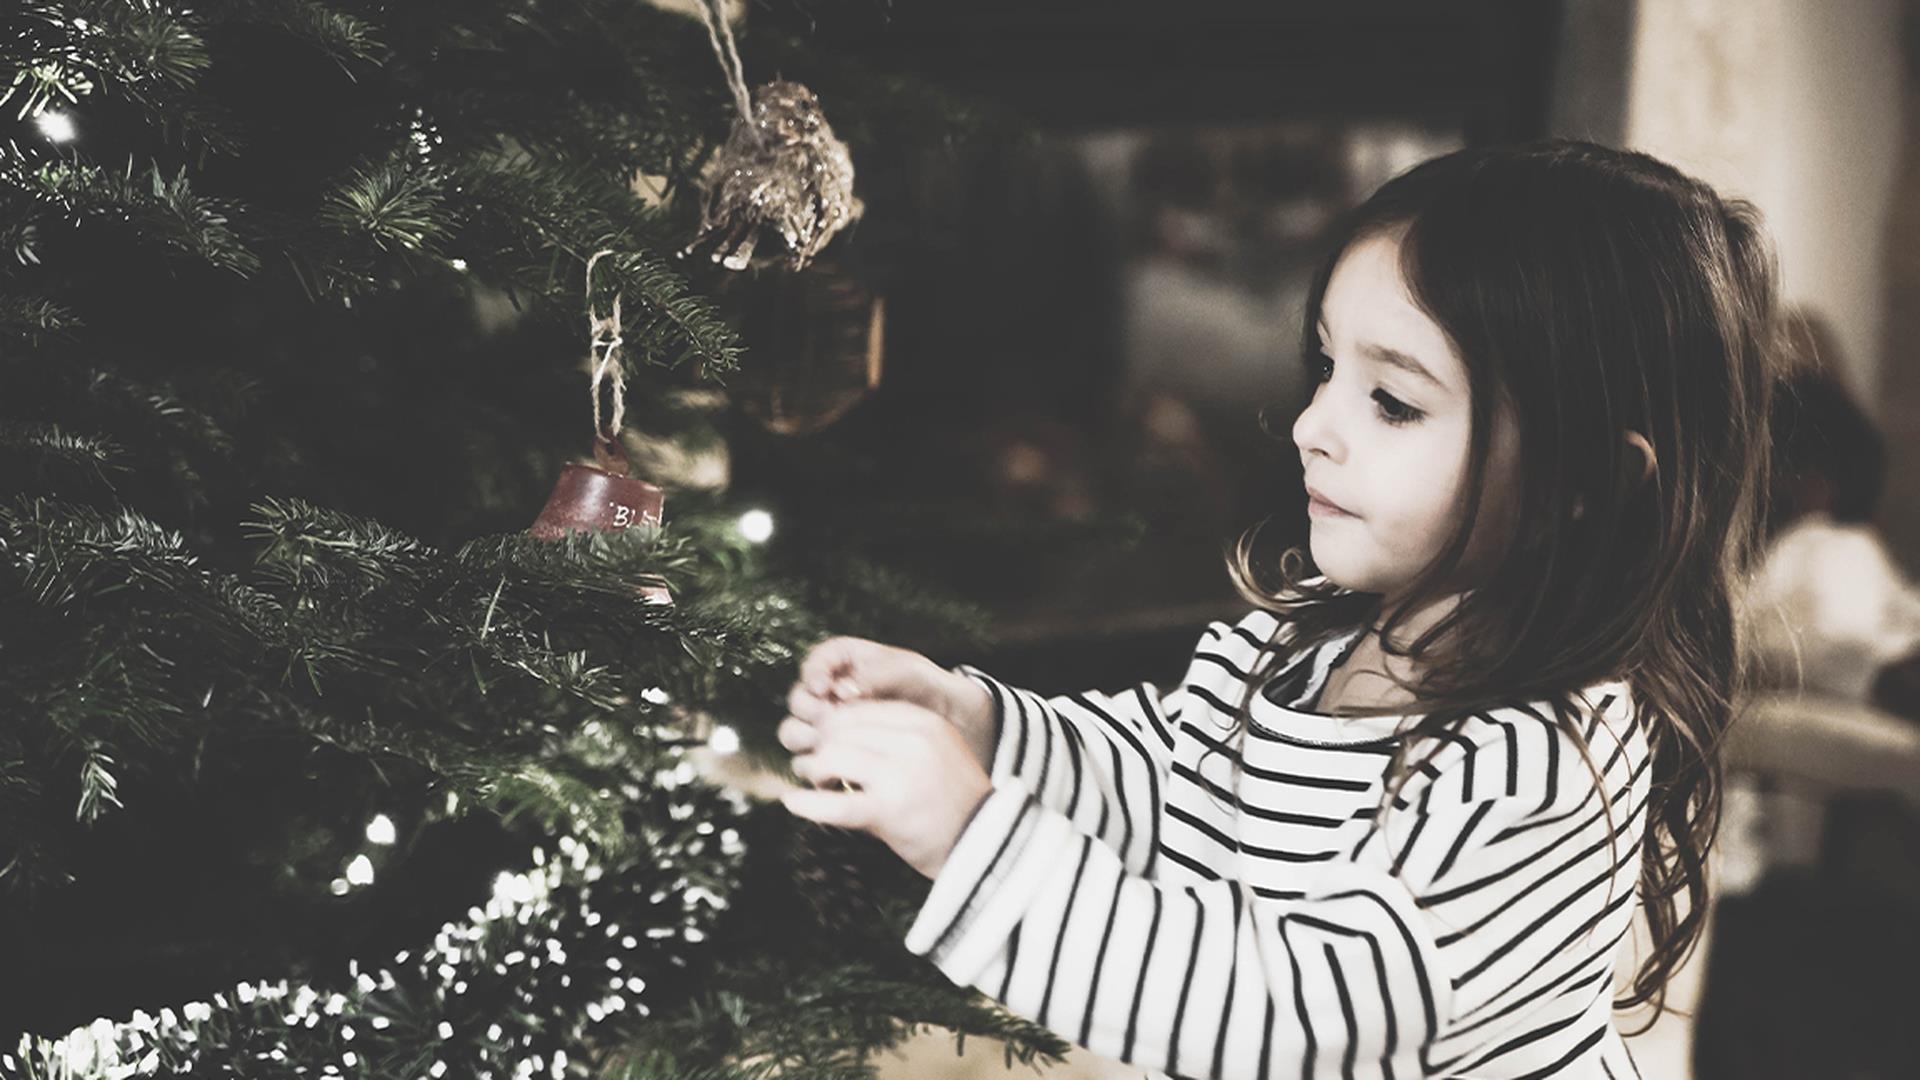 Regali Di Natale Per Bambina 8 Anni.Natale 2019 20 Idee Regalo Bambina Dai 4 Agli 8 Anni